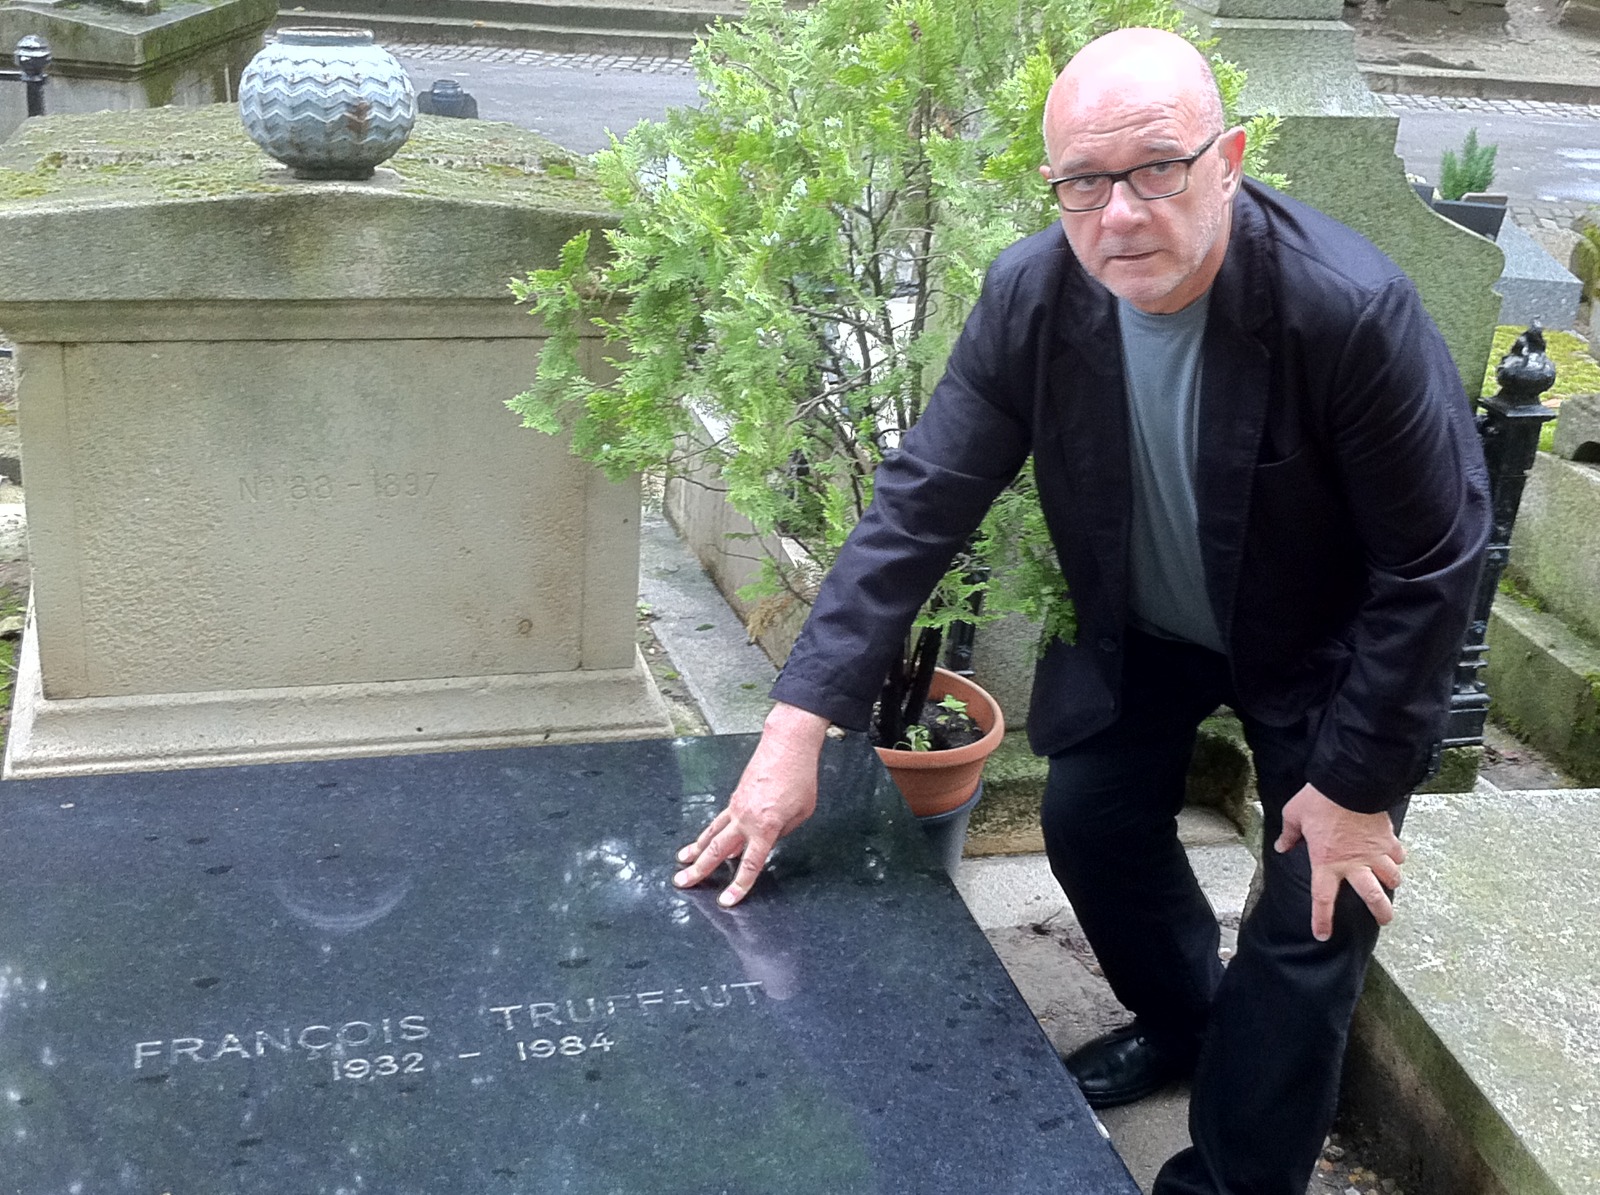 Ampliar: Miguel Anxo Fernández na tumba de Truffeaut 2022